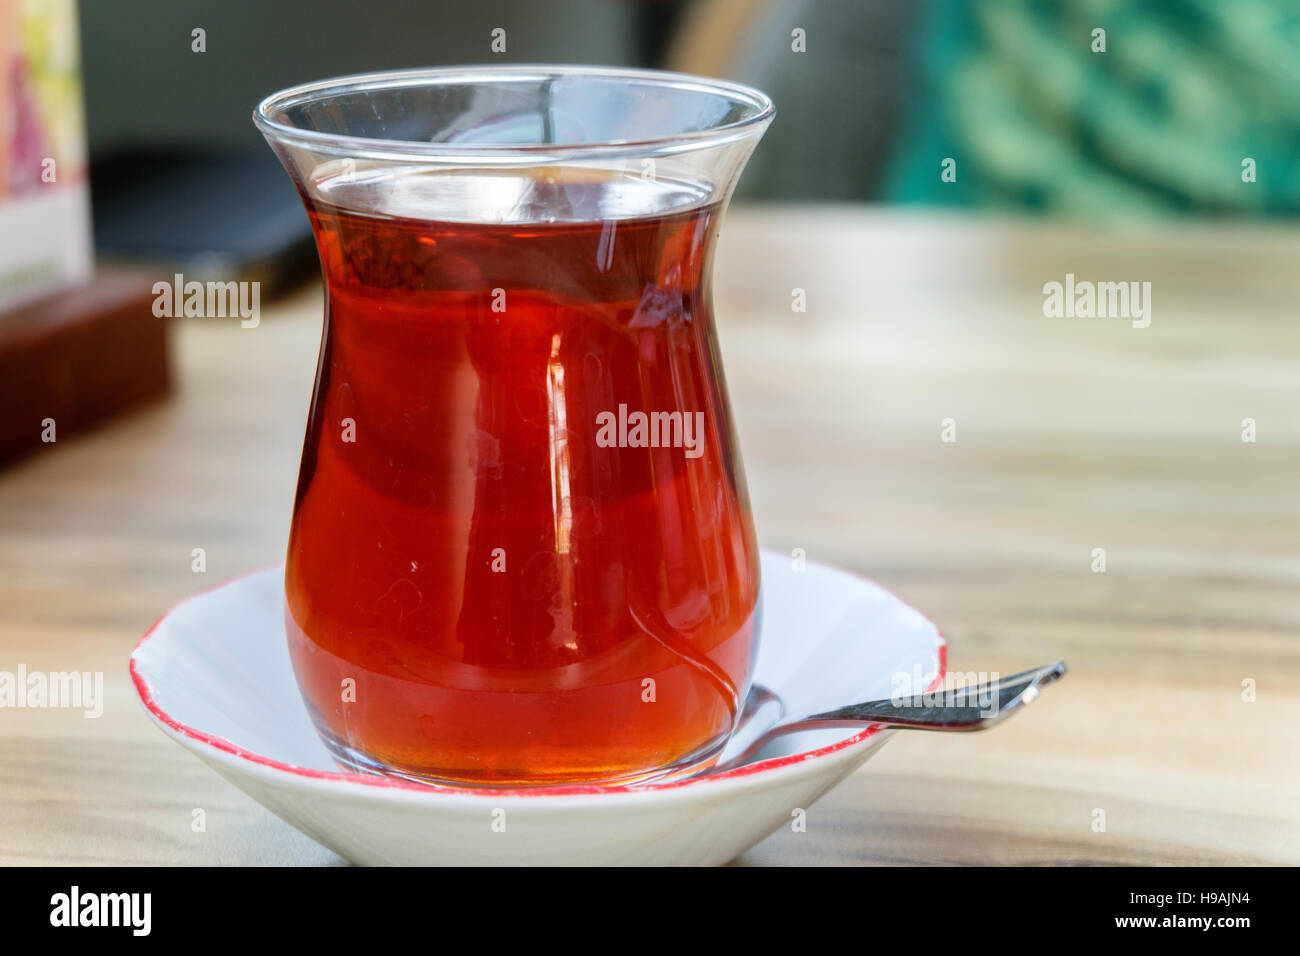 glass of Turkish tea, on wooden table Stock Photo